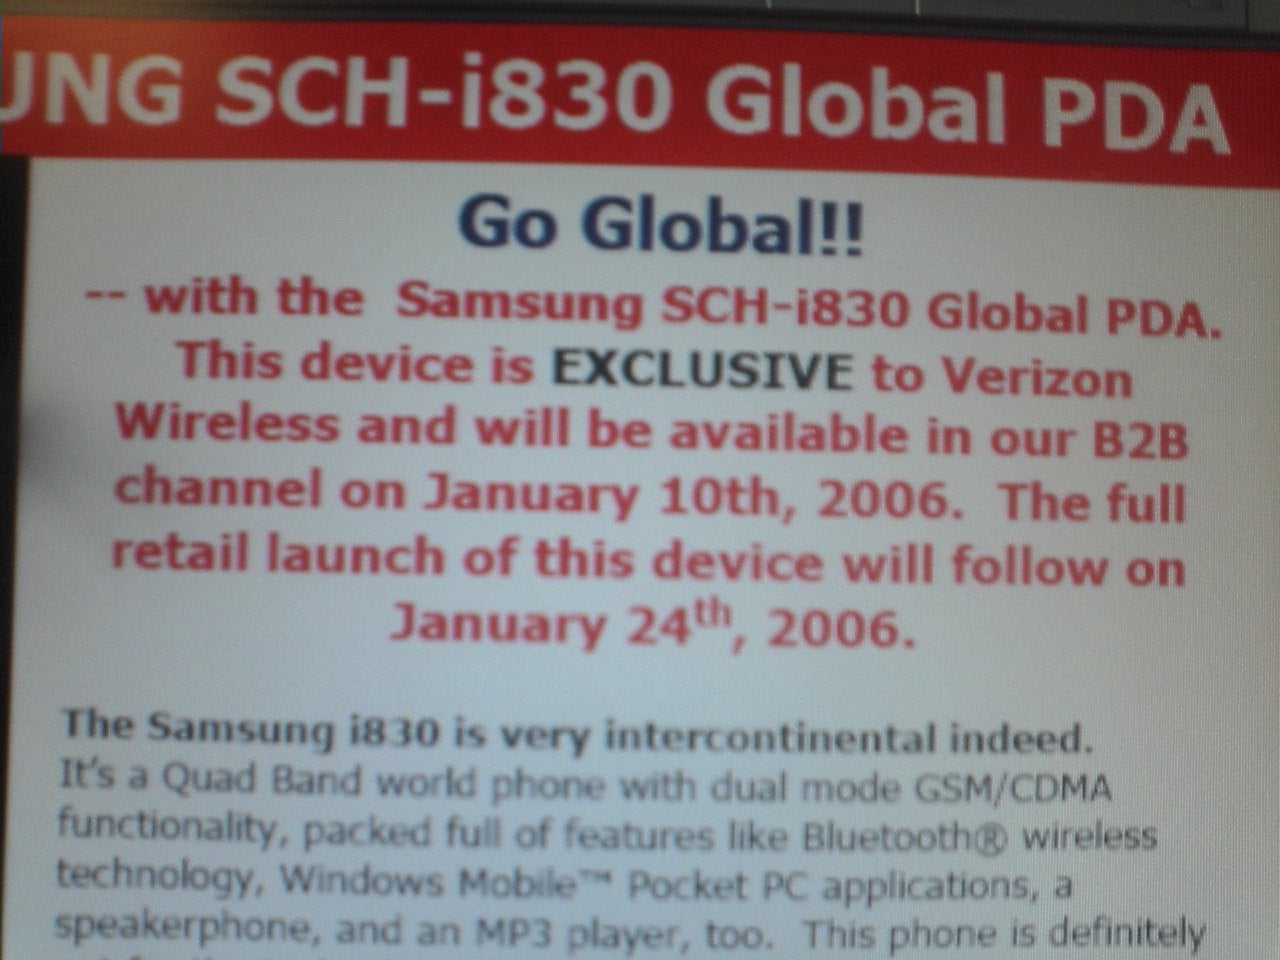 Verizon to launch Samsung SCH-i830 next month